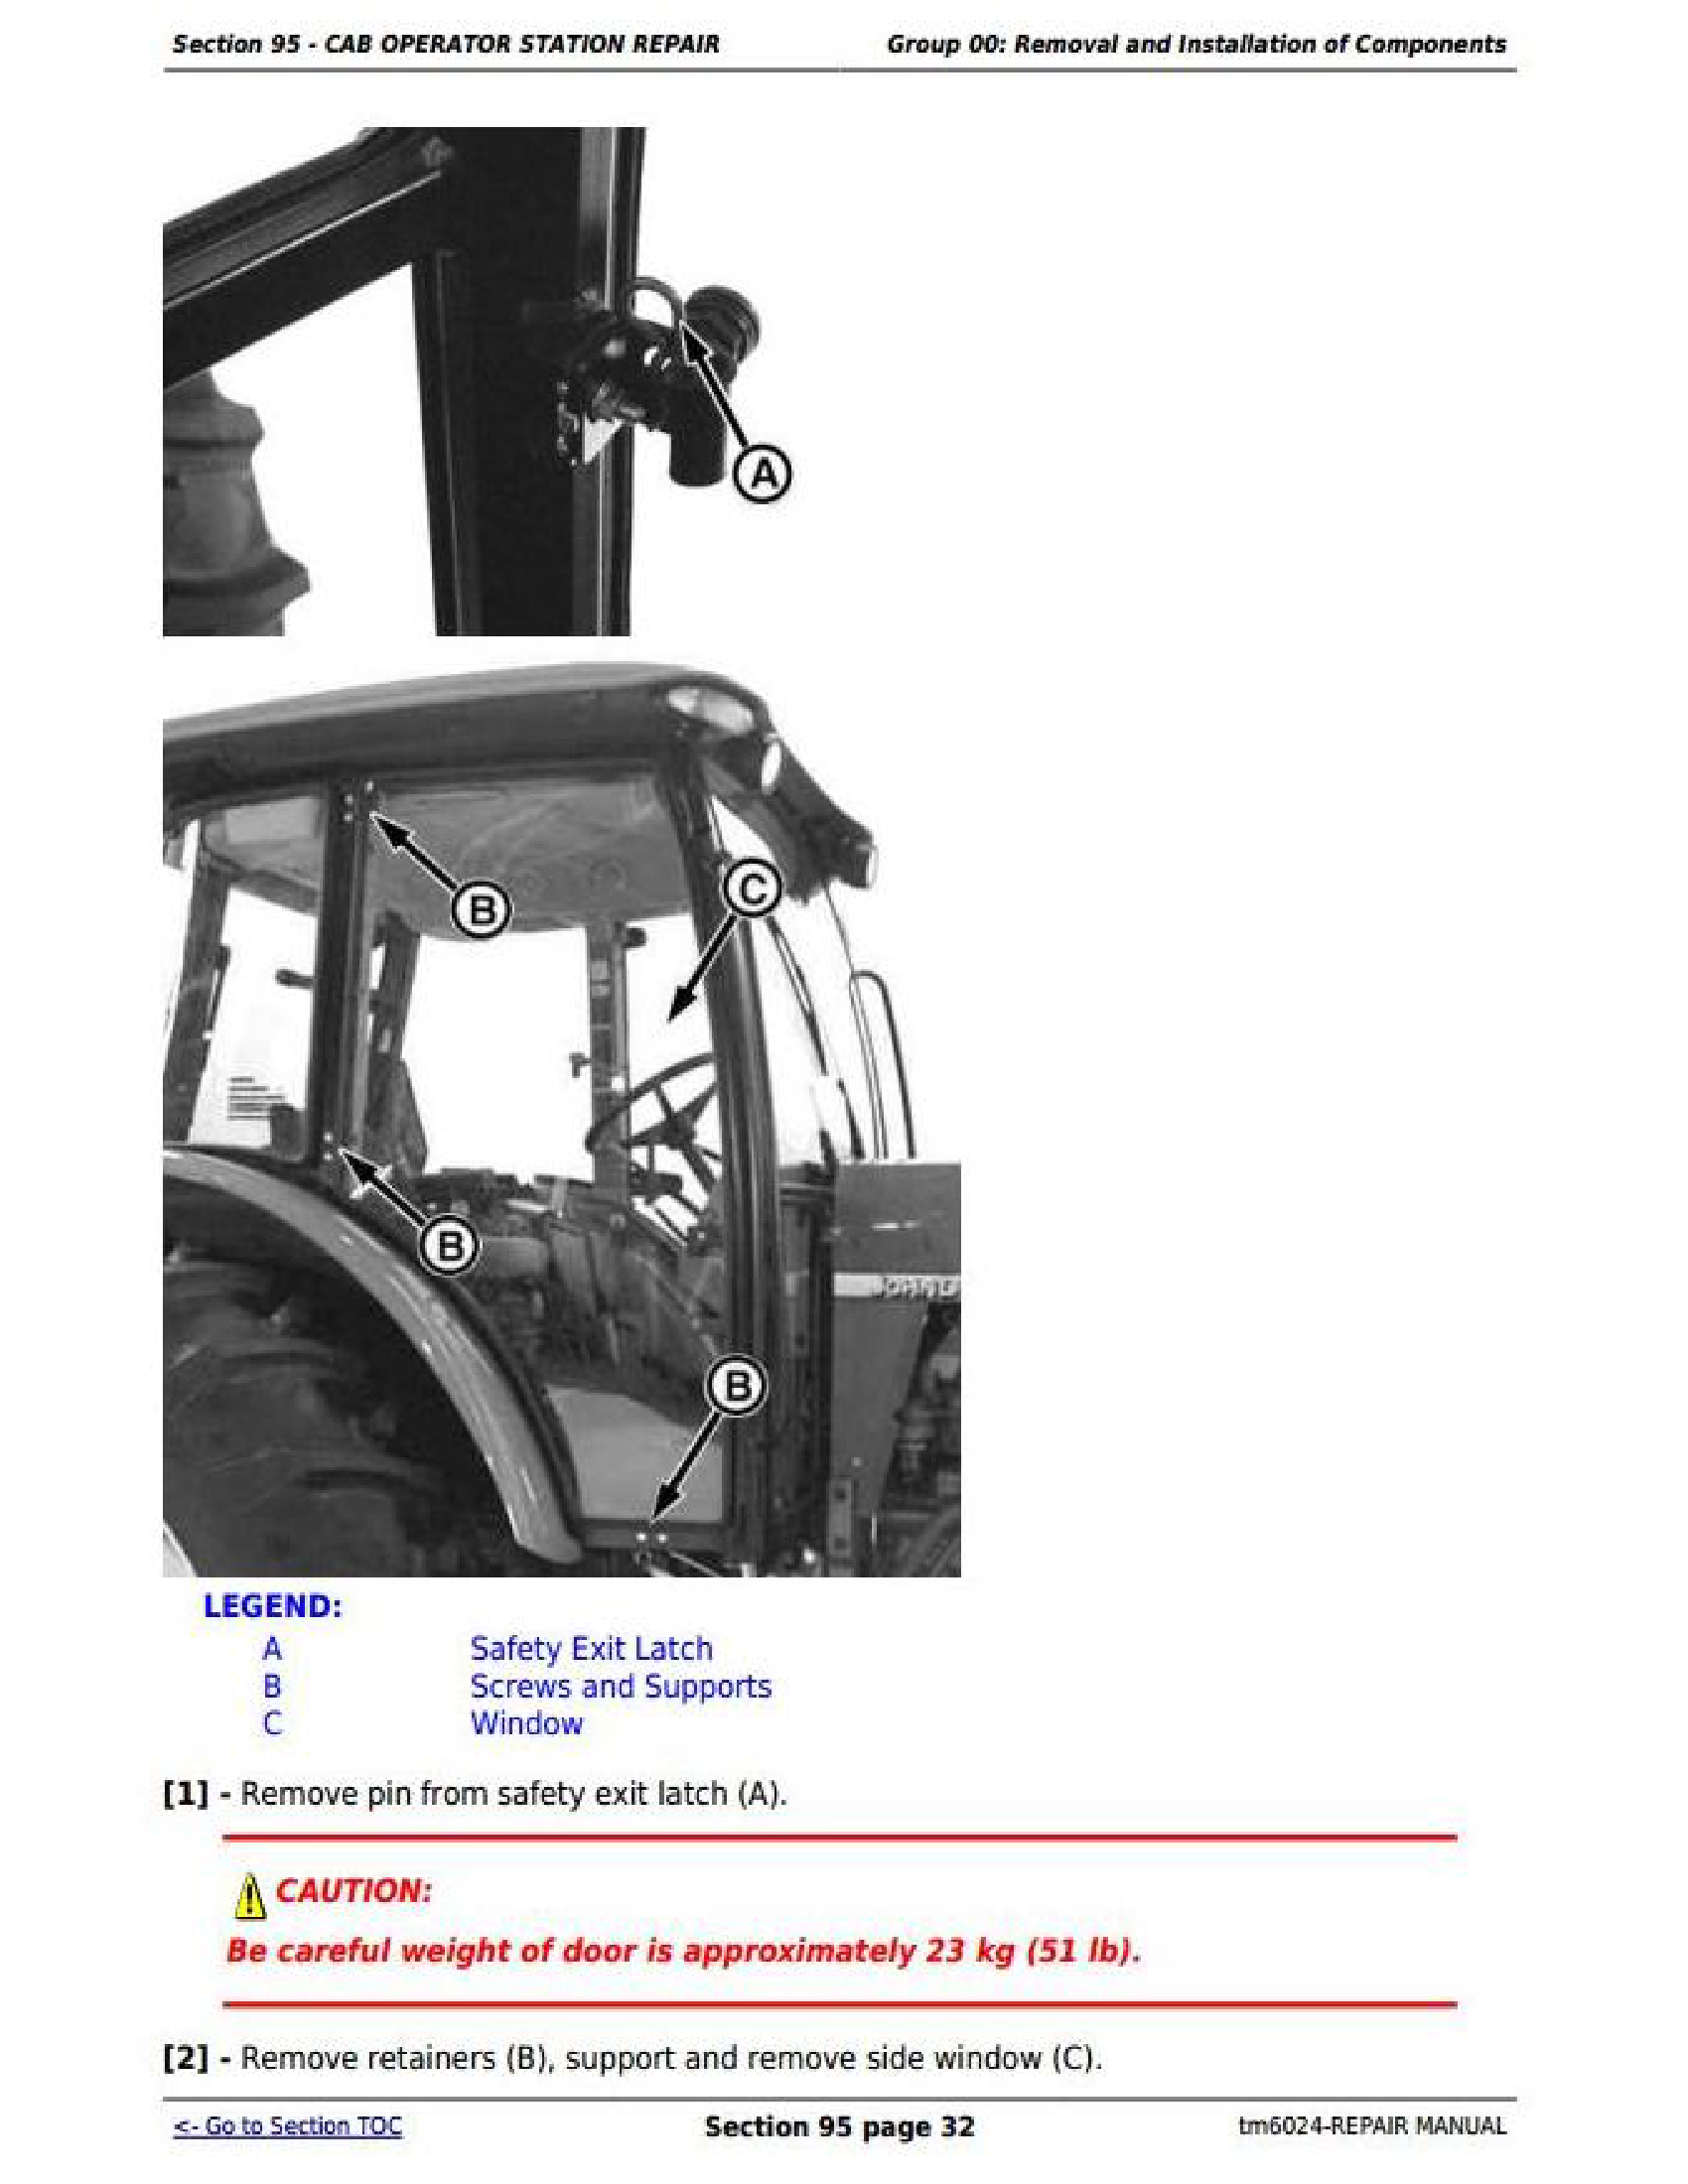 John Deere 6603 manual pdf